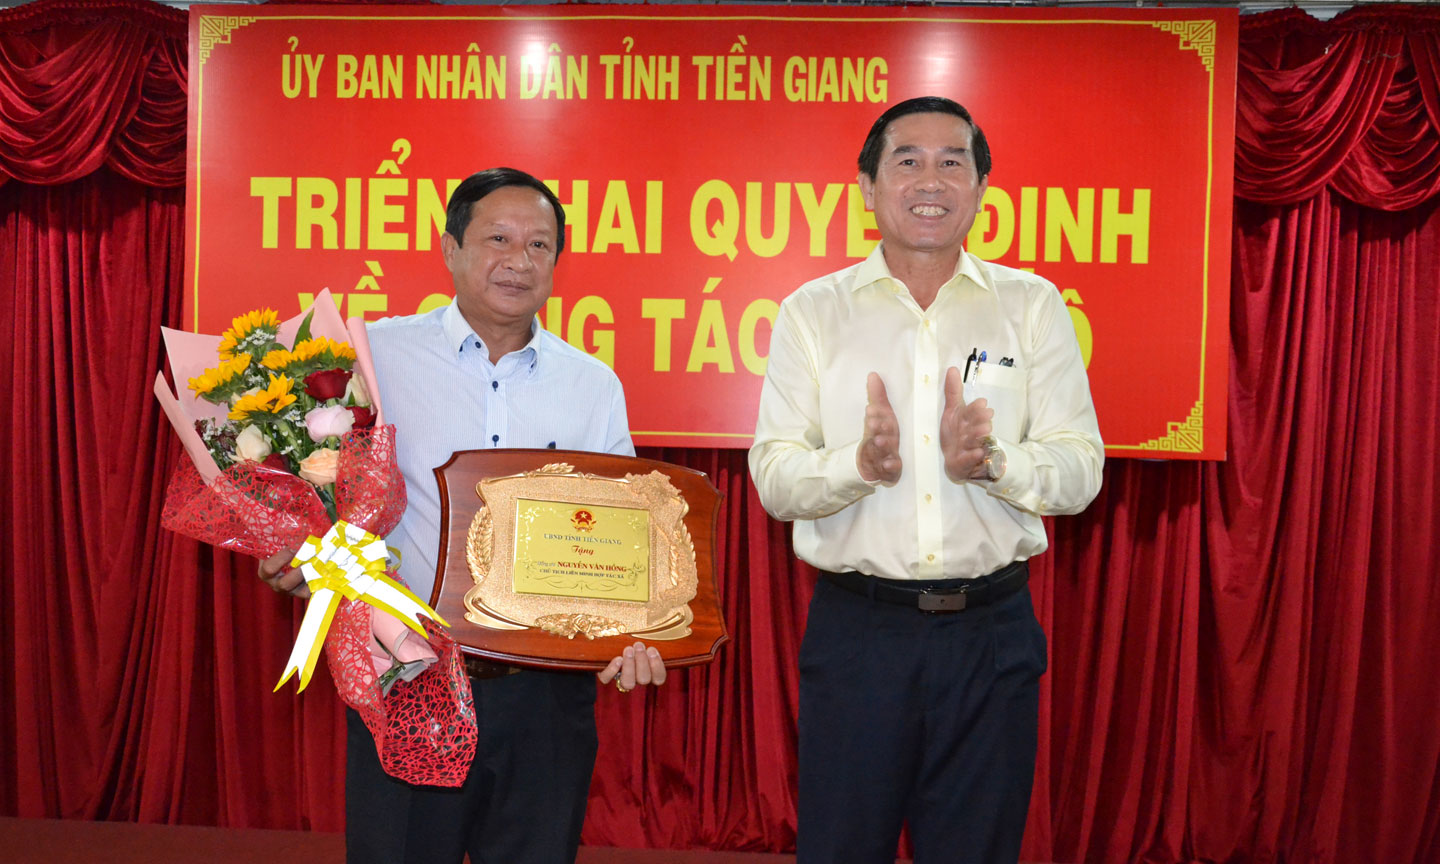 Đồng chí Lê Văn Hưởng trao quyết định nghỉ lưu theo chế độ cho đồng chí Nguyễn Văn Hồng.